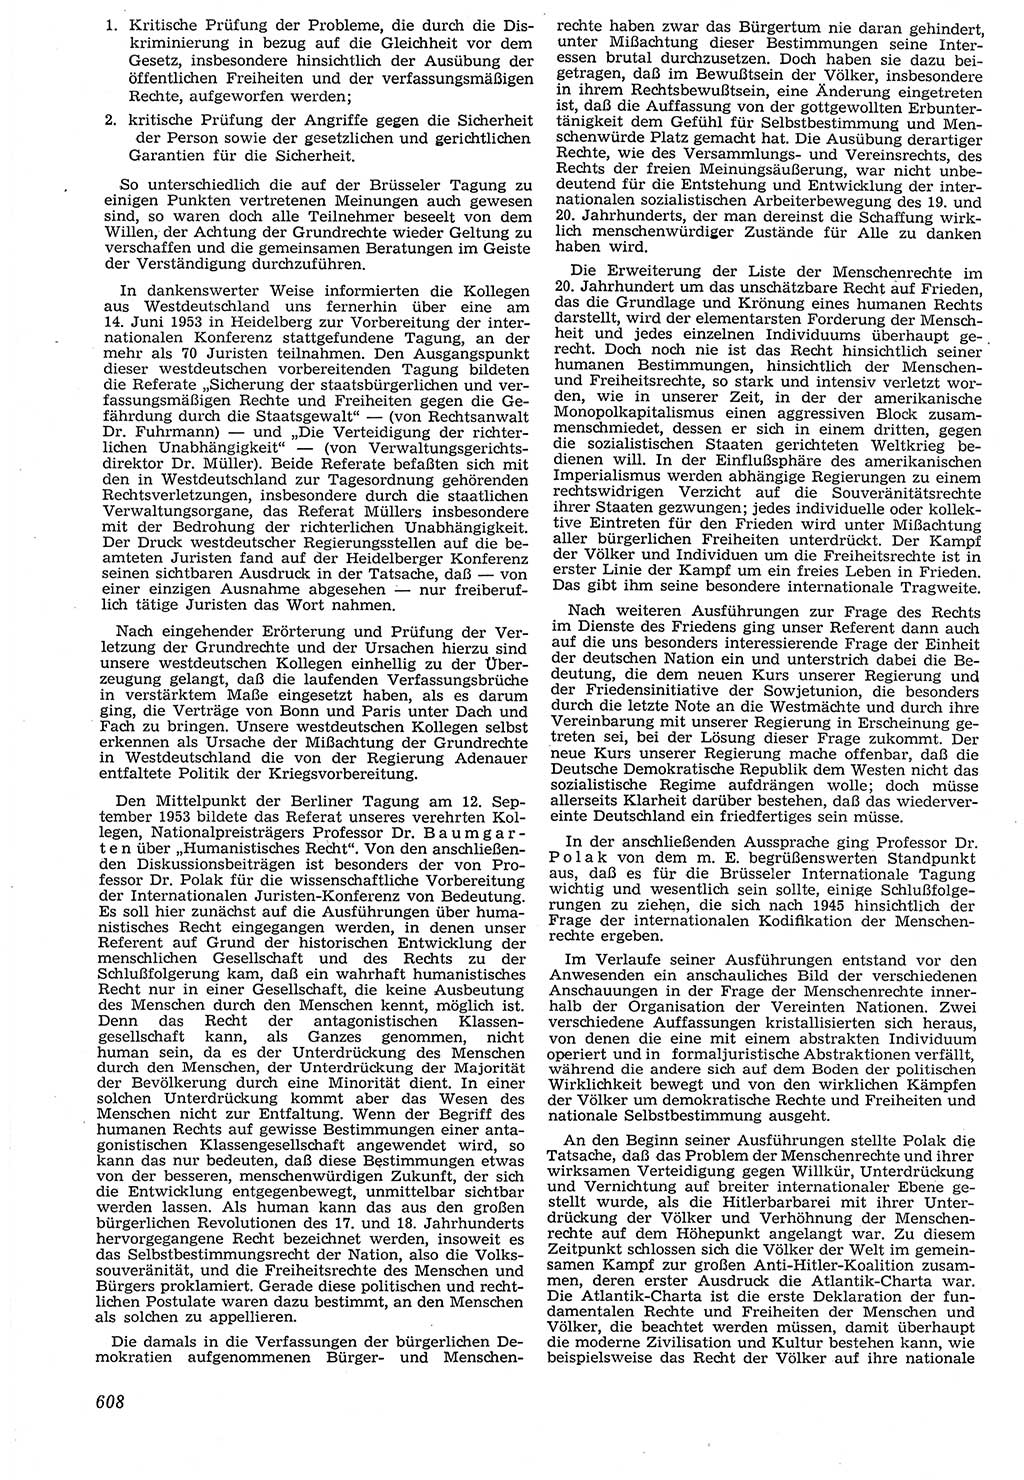 Neue Justiz (NJ), Zeitschrift für Recht und Rechtswissenschaft [Deutsche Demokratische Republik (DDR)], 7. Jahrgang 1953, Seite 608 (NJ DDR 1953, S. 608)